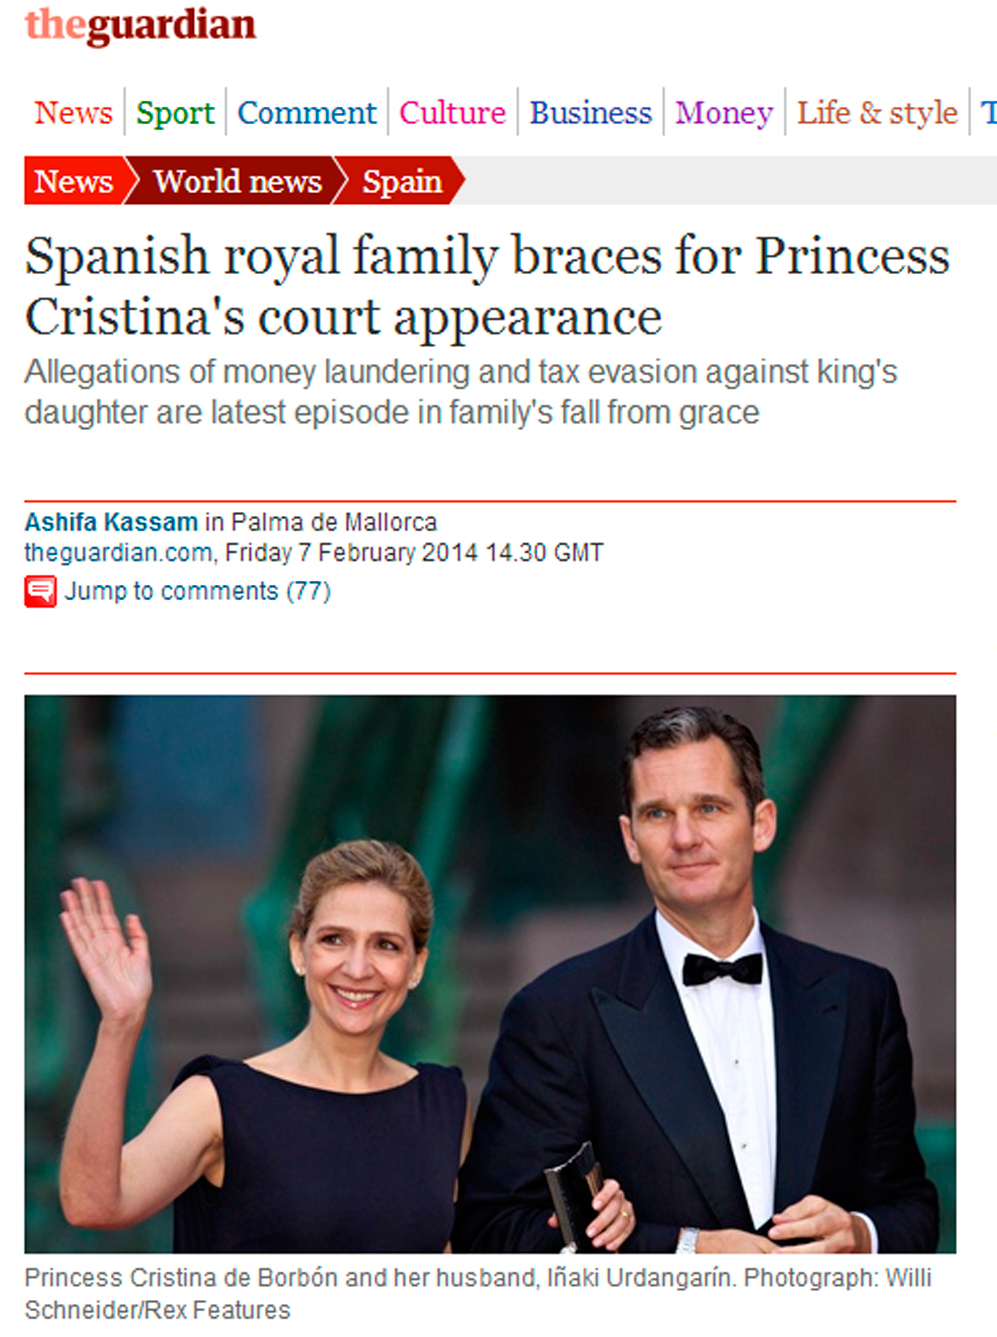 "La familia real espaola se prepara para la comparecencia ante el...